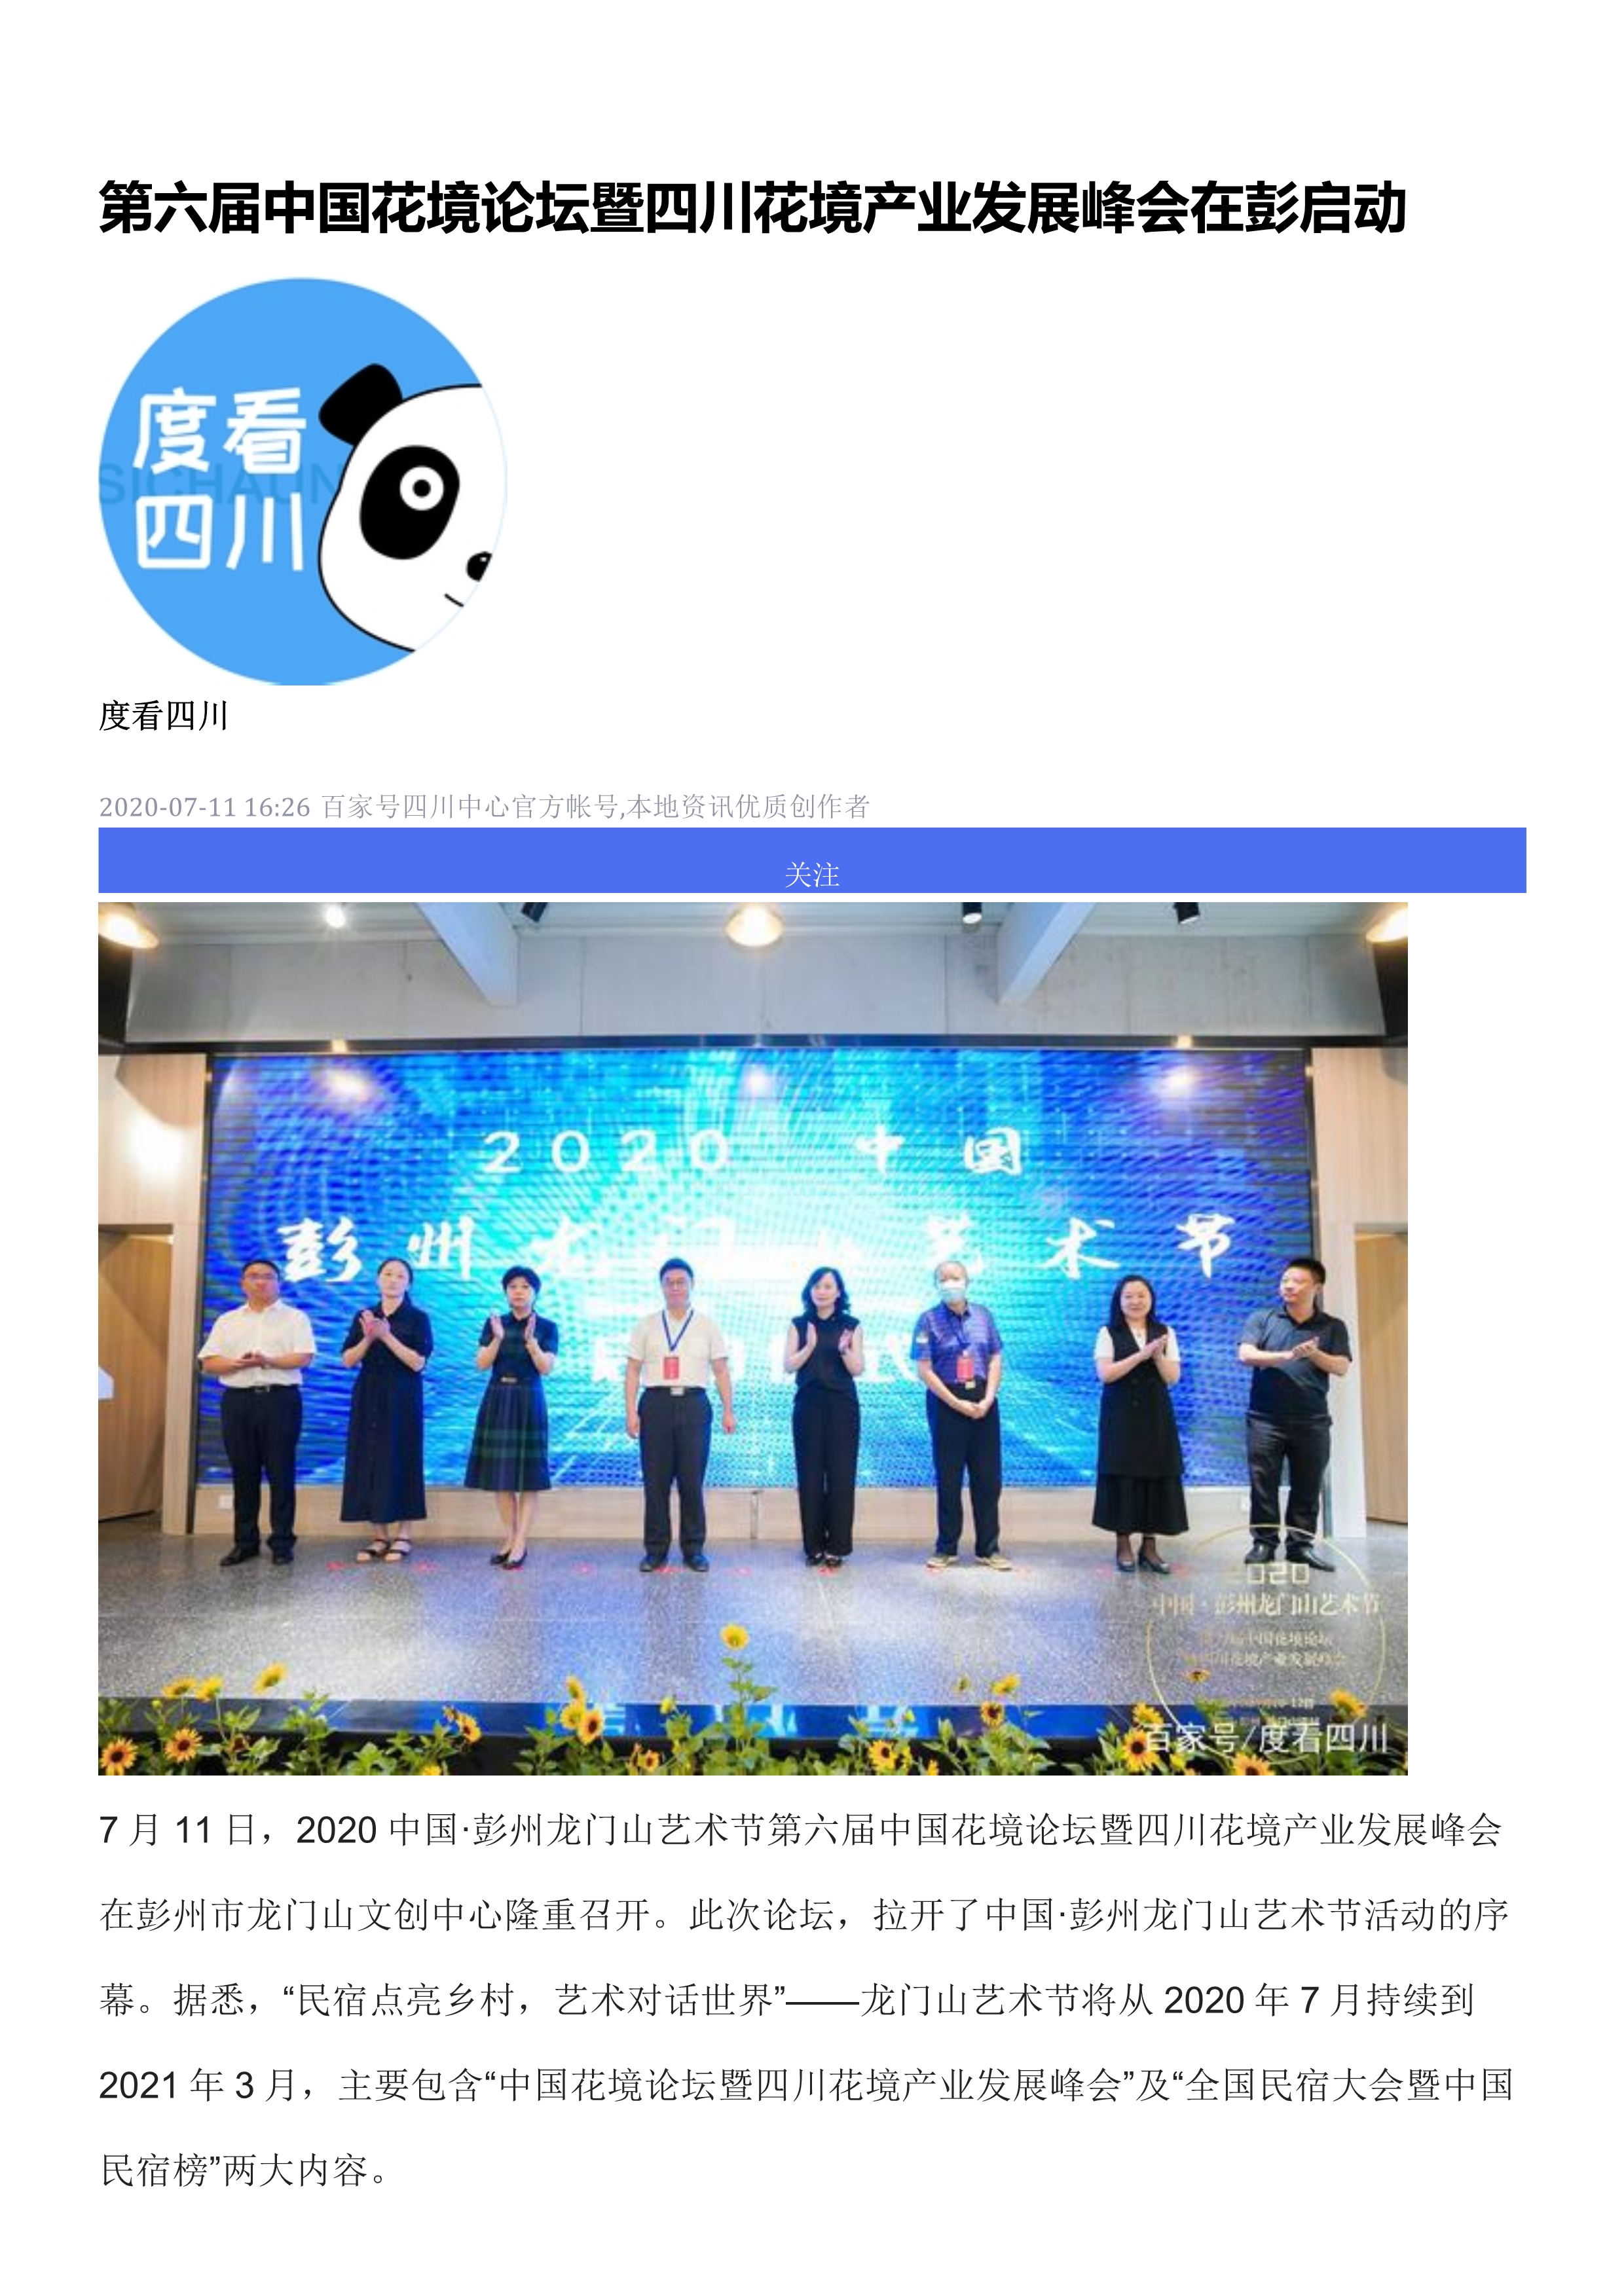 FB 06第六届中国花境论坛在彭州举行_4